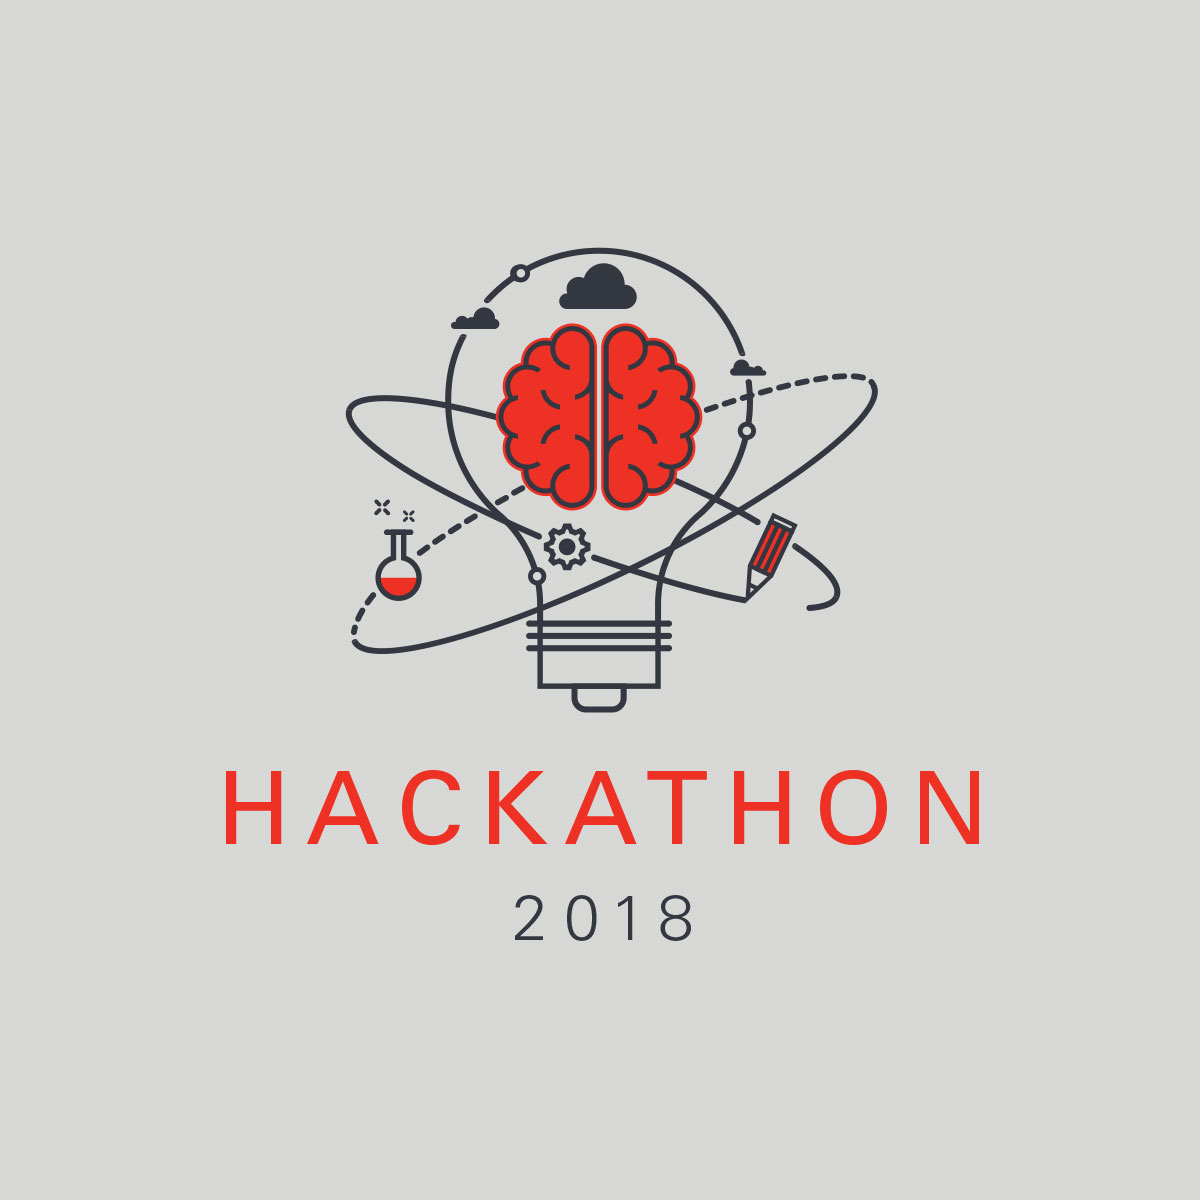 Oracle Data Cloud – Hackathon 2018 T-Shirt Design